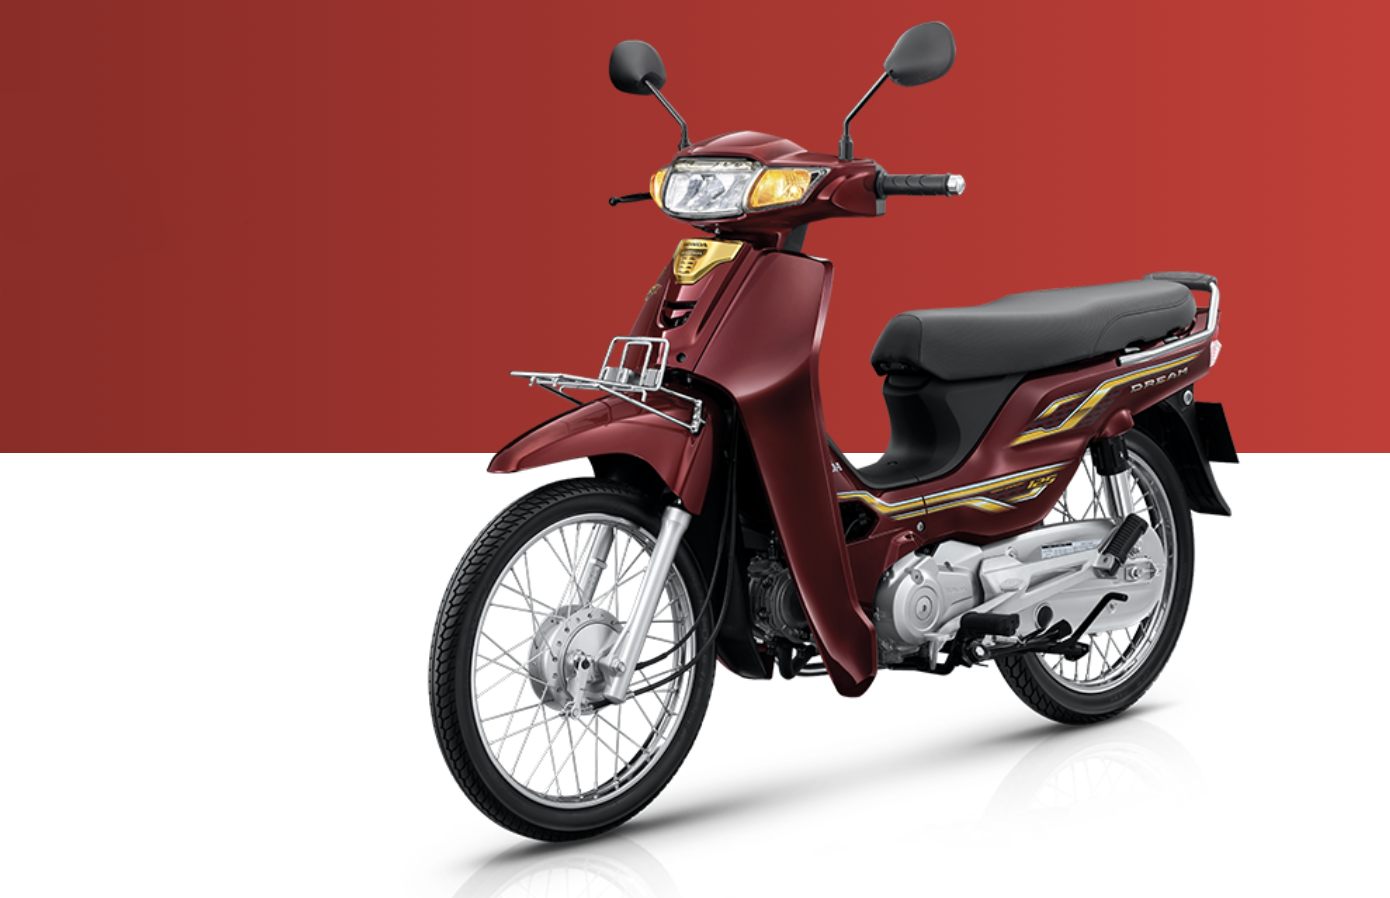 Honda Dream thế hệ mới đăng ký kiểu dáng công nghiệp tại Việt Nam - ảnh 3